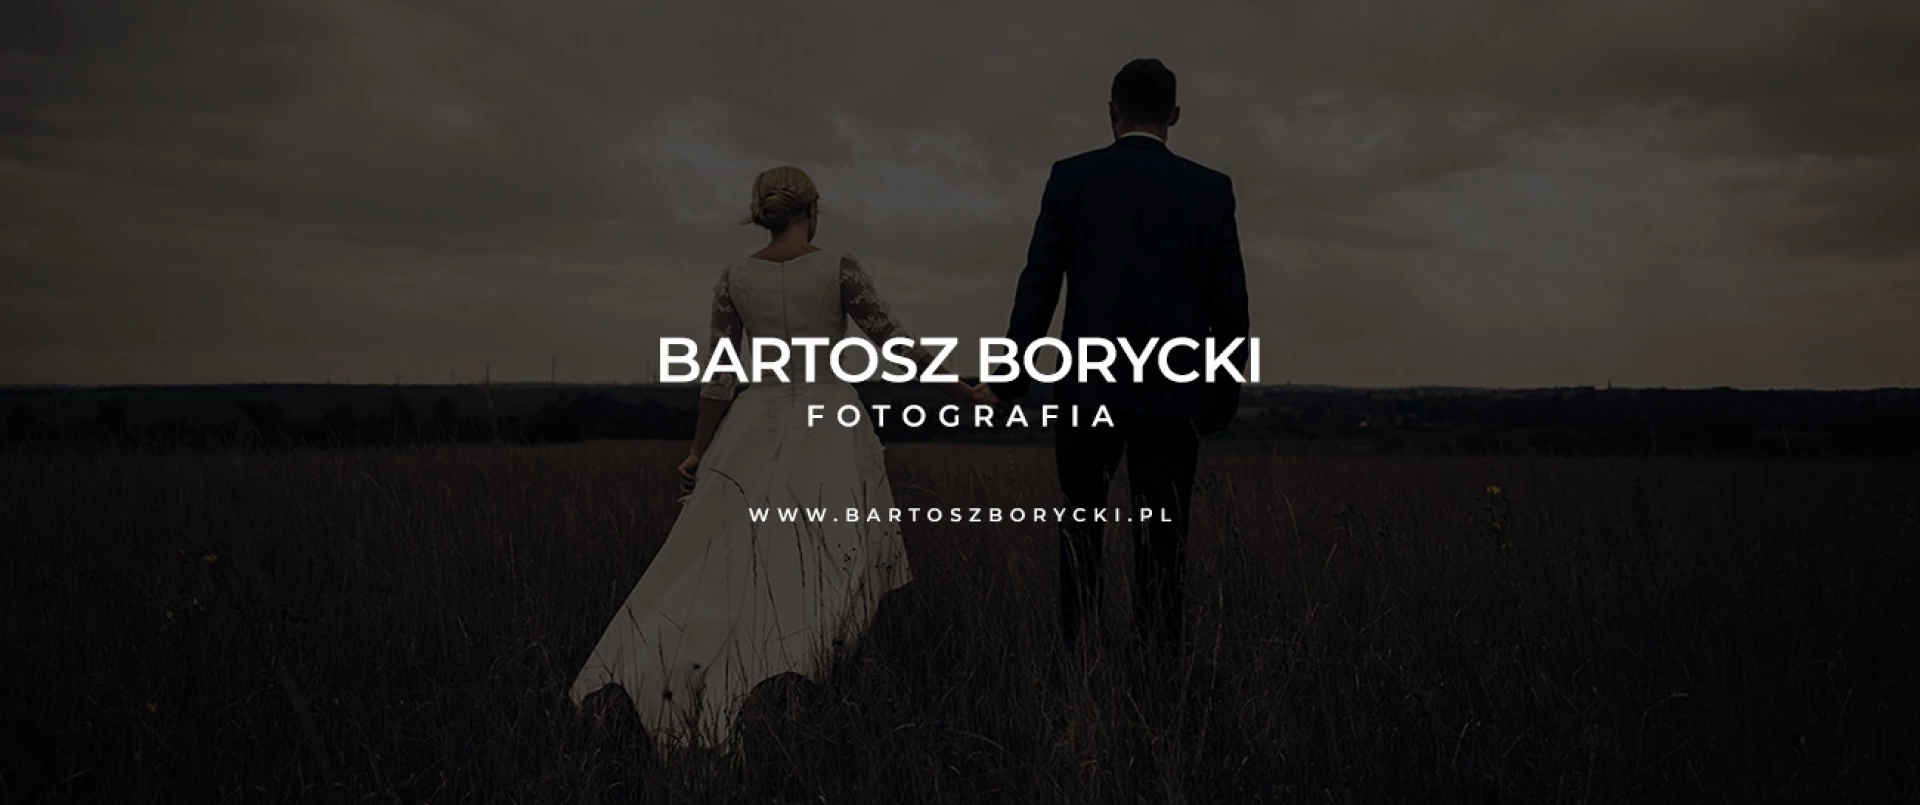 portfolio zdjecia znany fotograf bartosz-borycki